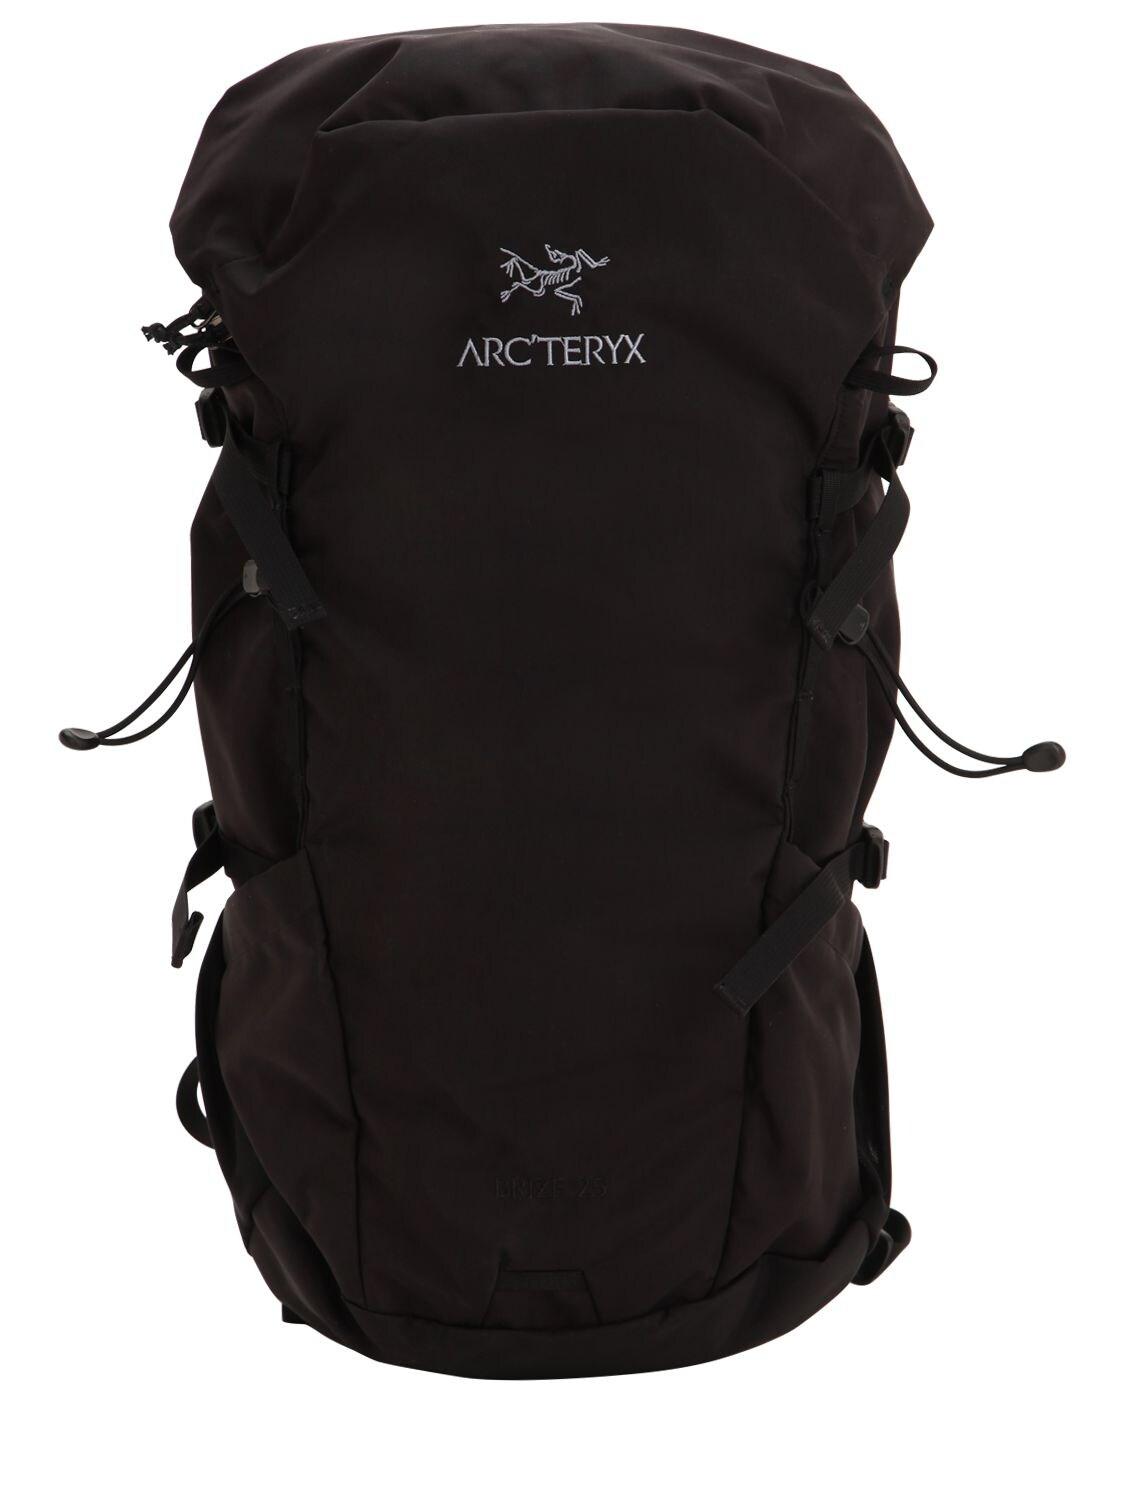 Arc'teryx 25l Brize Backpack in Black for Men - Lyst